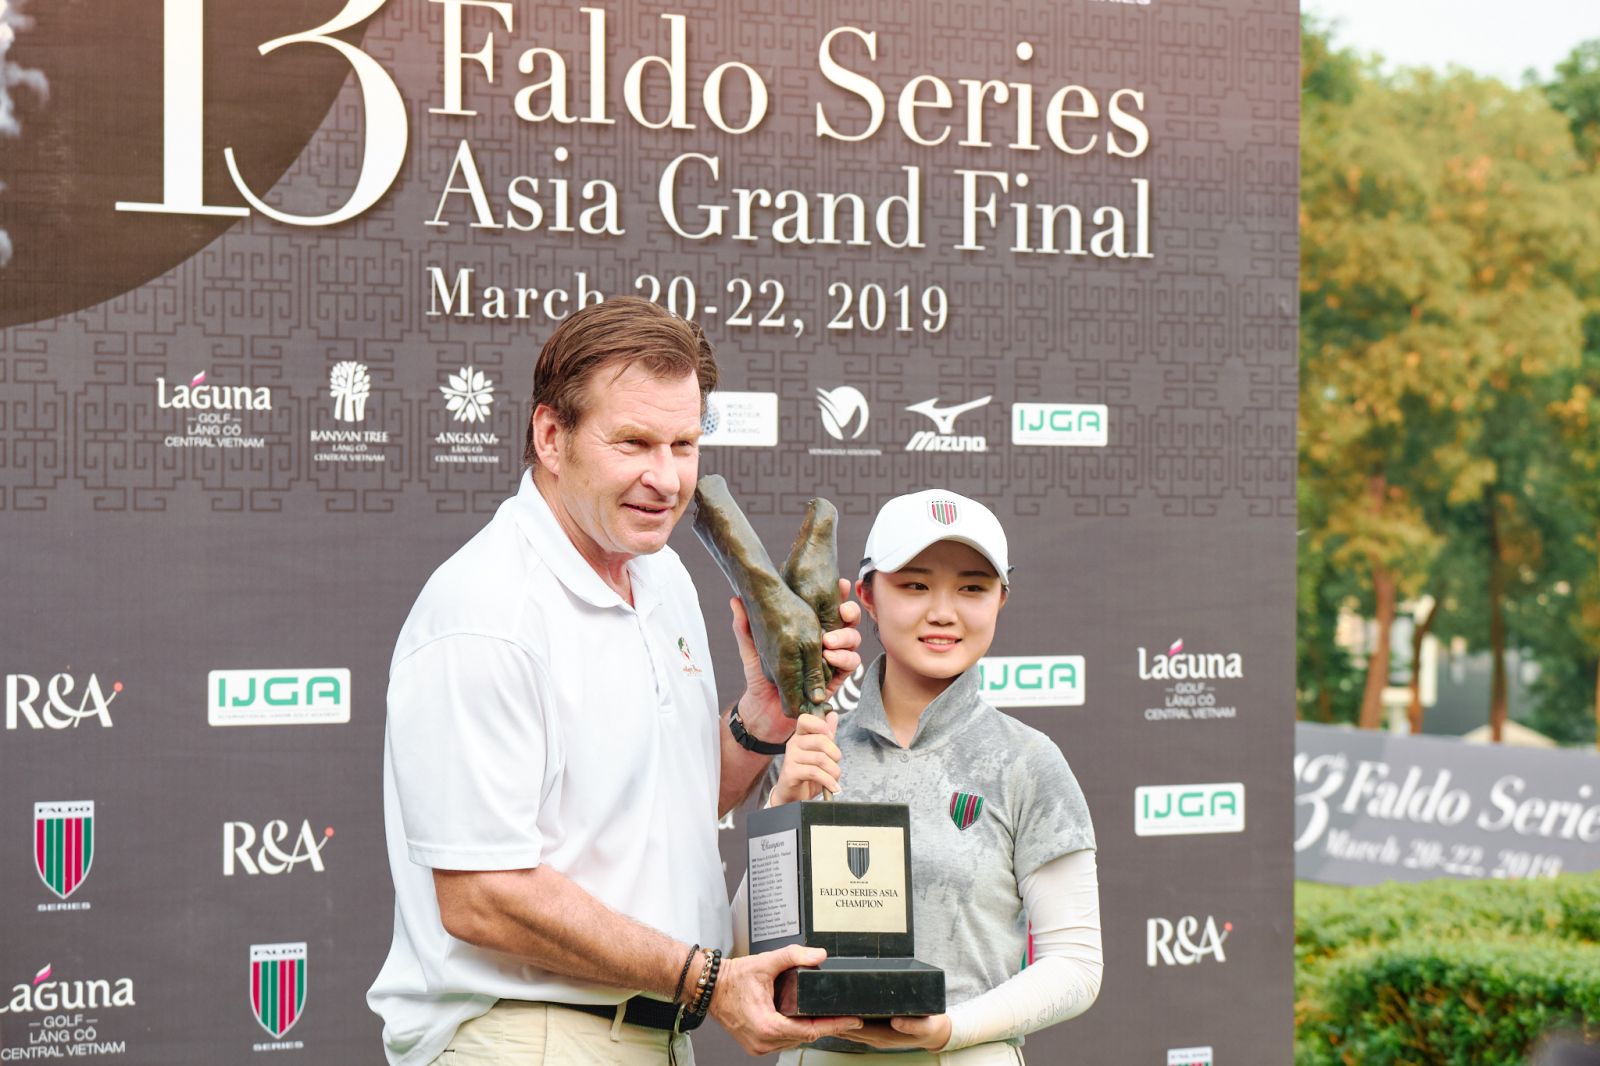 Chang Hsin-chiao victory at Faldo Series Asia Grand Final